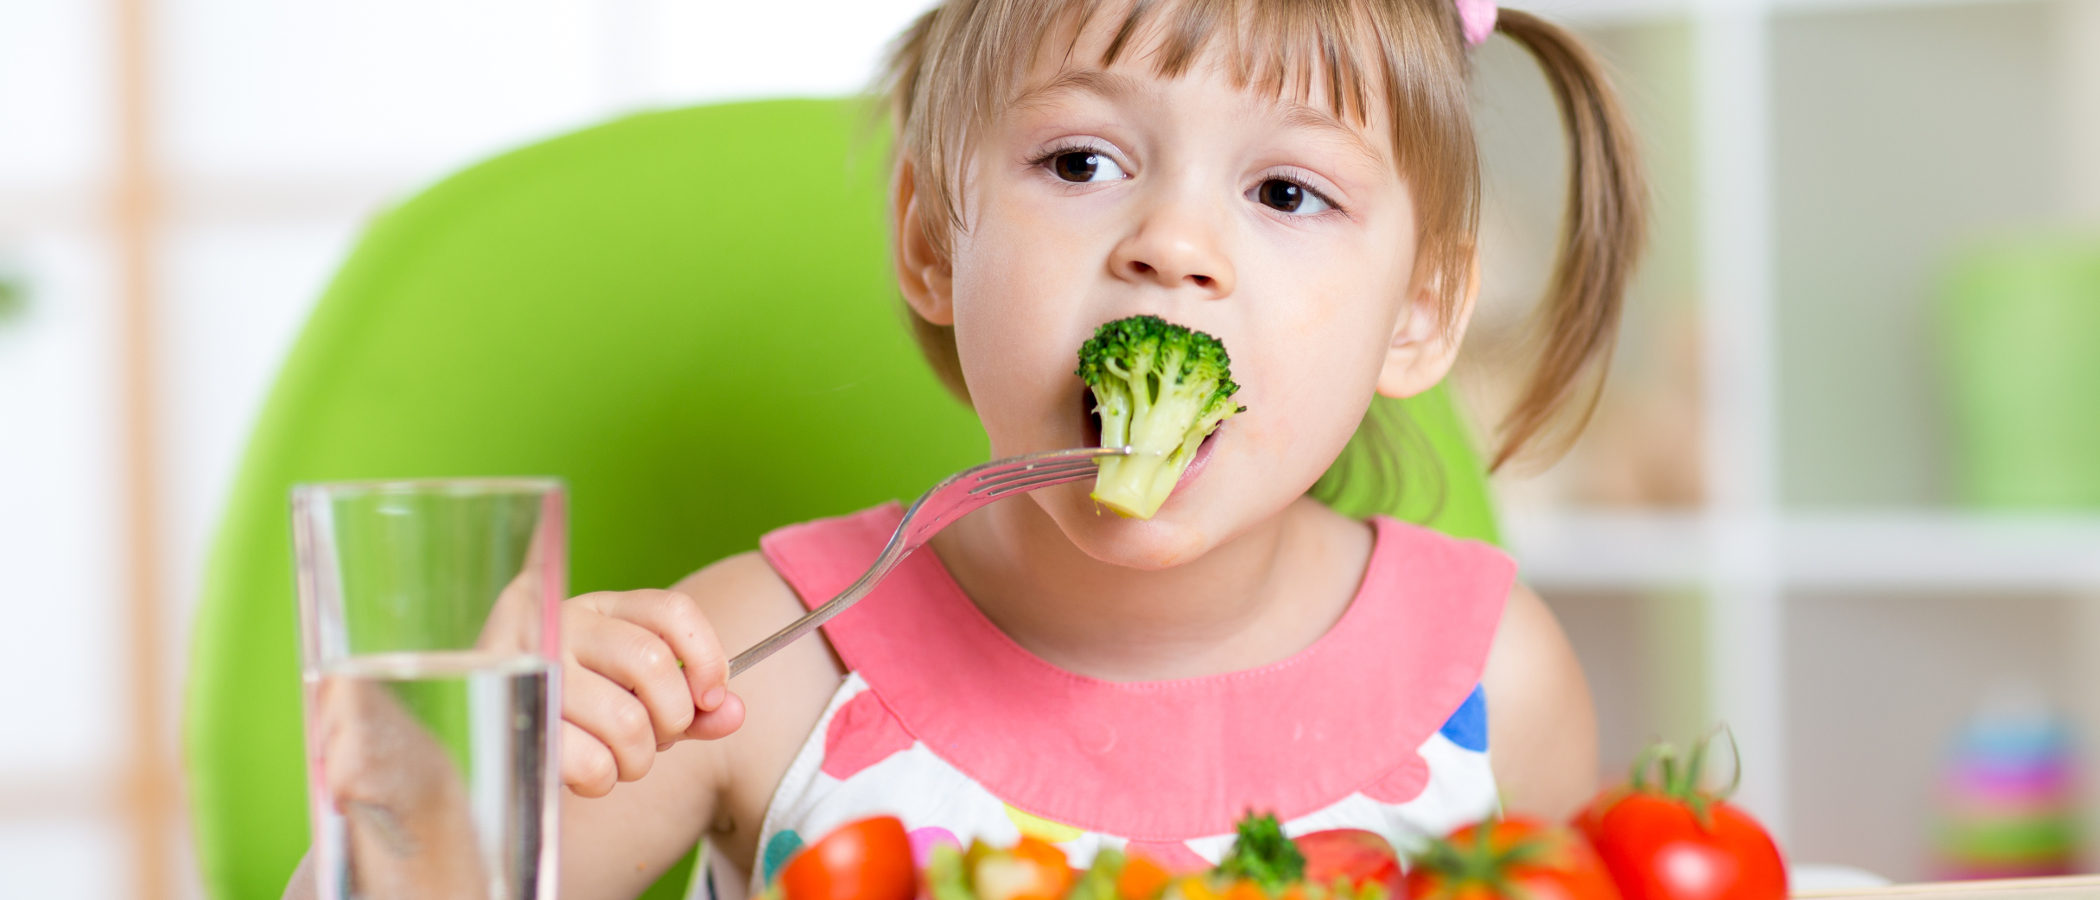 La fibra en la dieta infantil